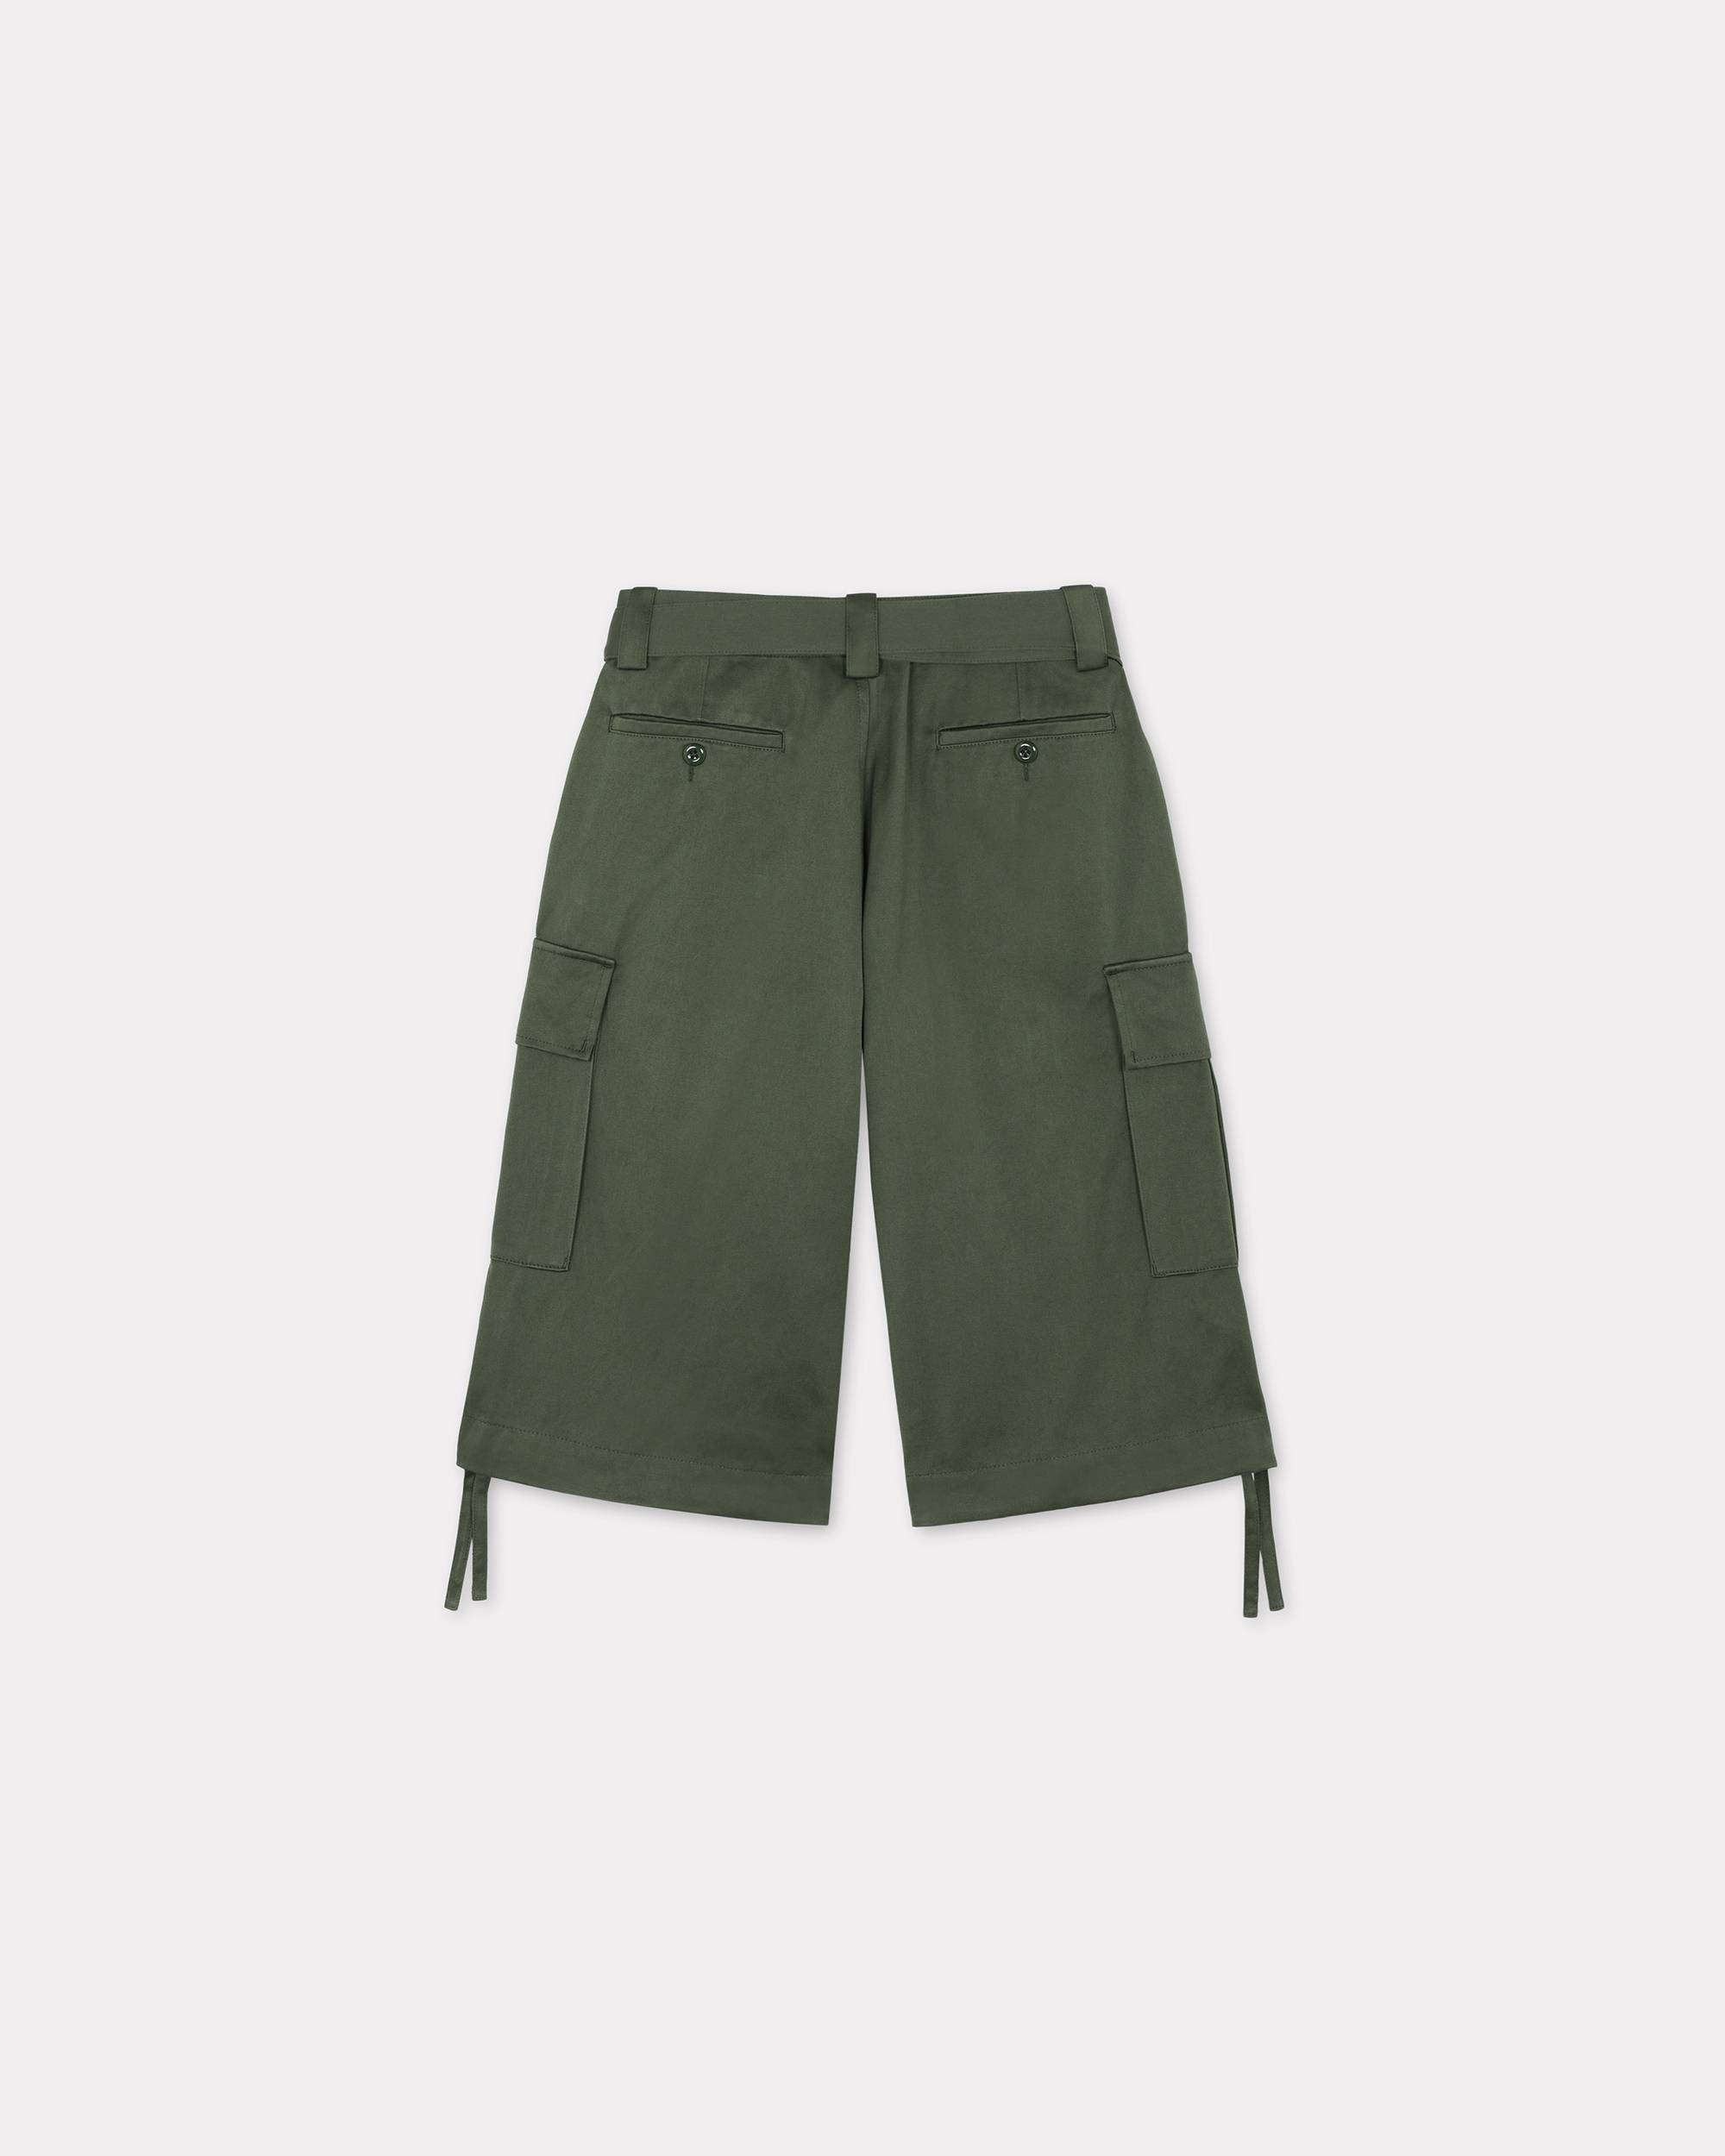 Army cargo shorts - 2